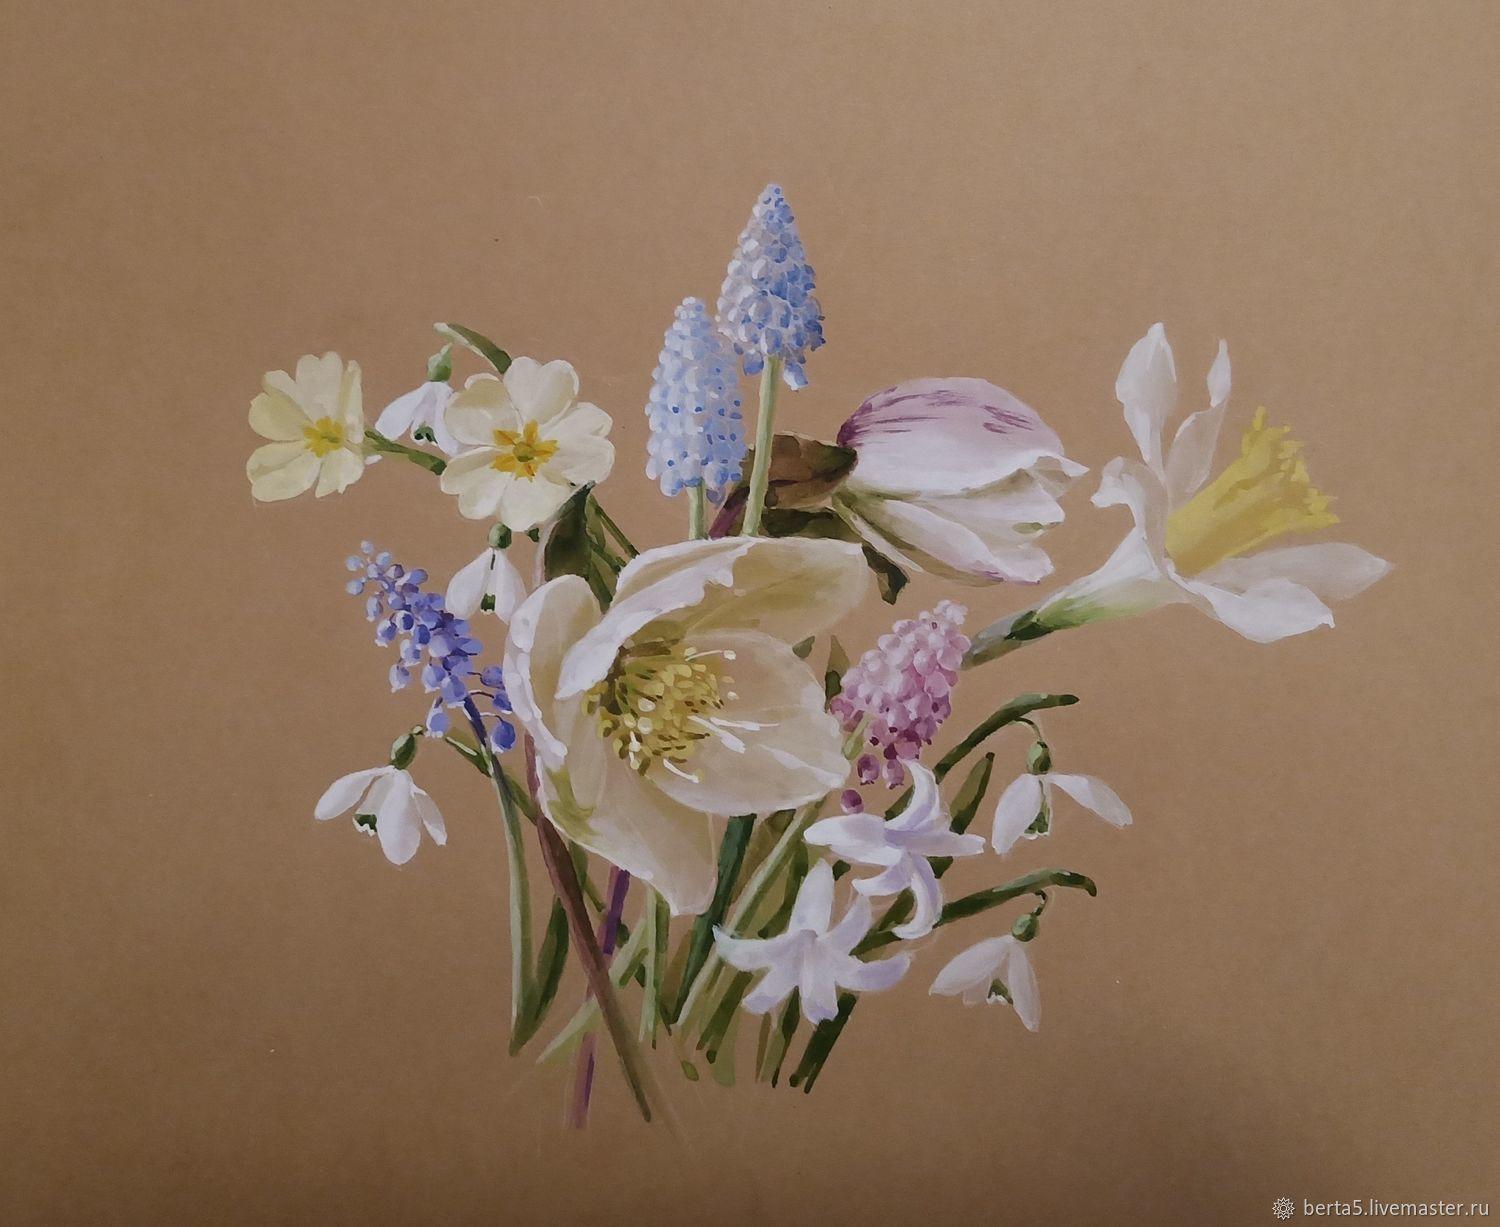 Купить картину Весна пришла в Москве от художника Мантров Дмитрий